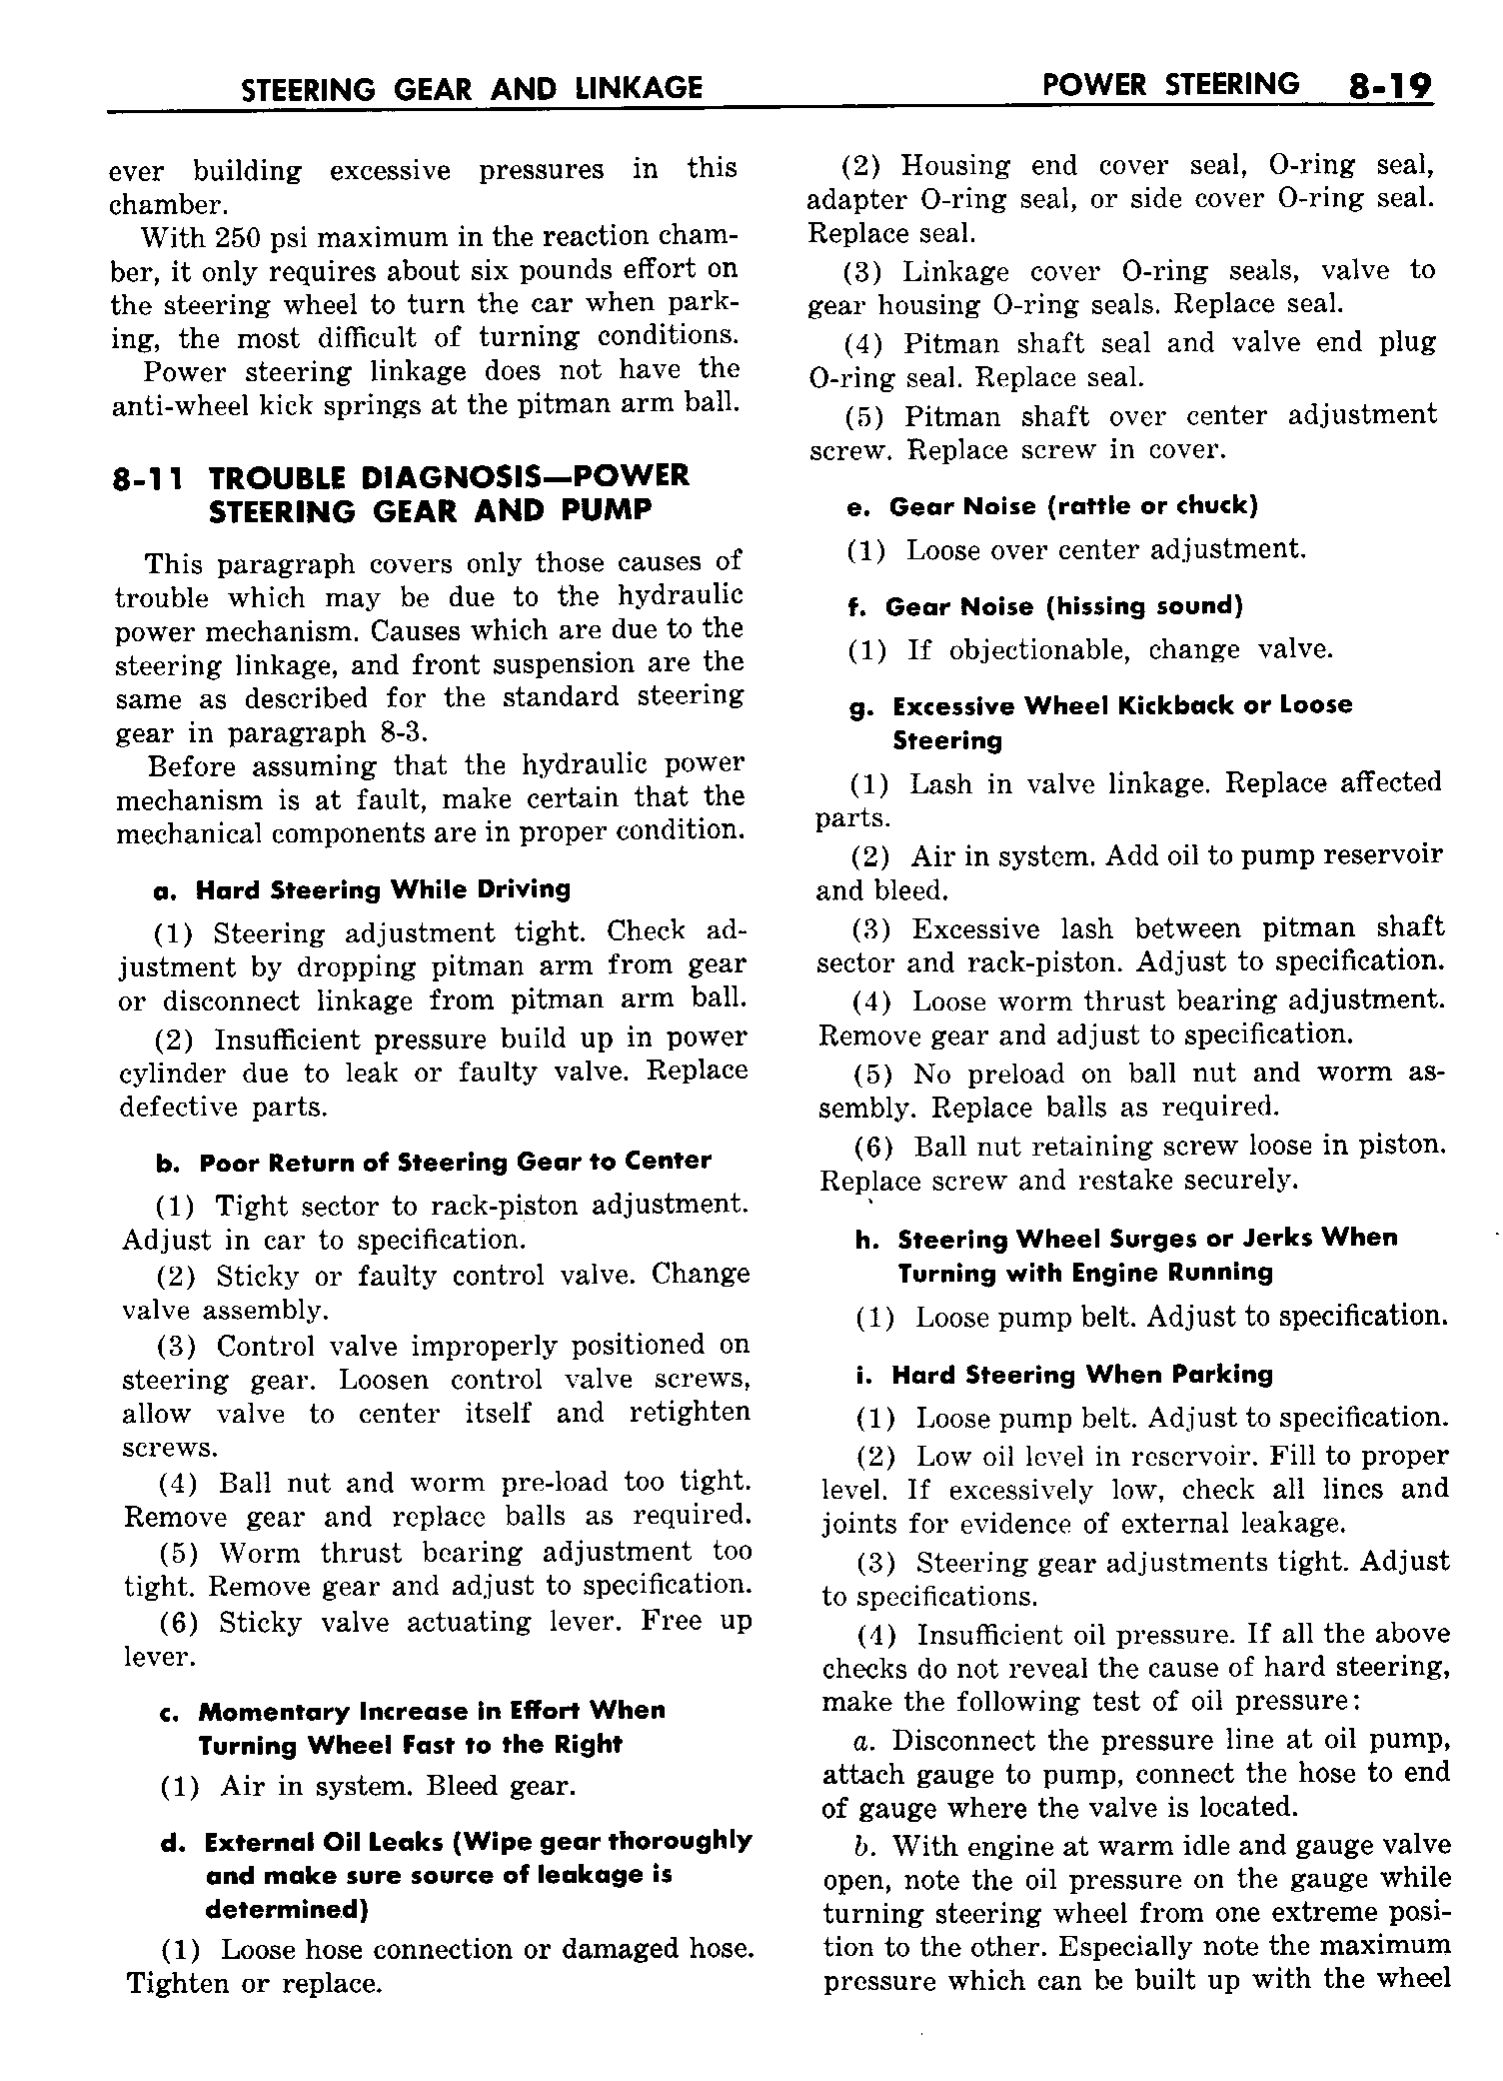 n_09 1958 Buick Shop Manual - Steering_19.jpg